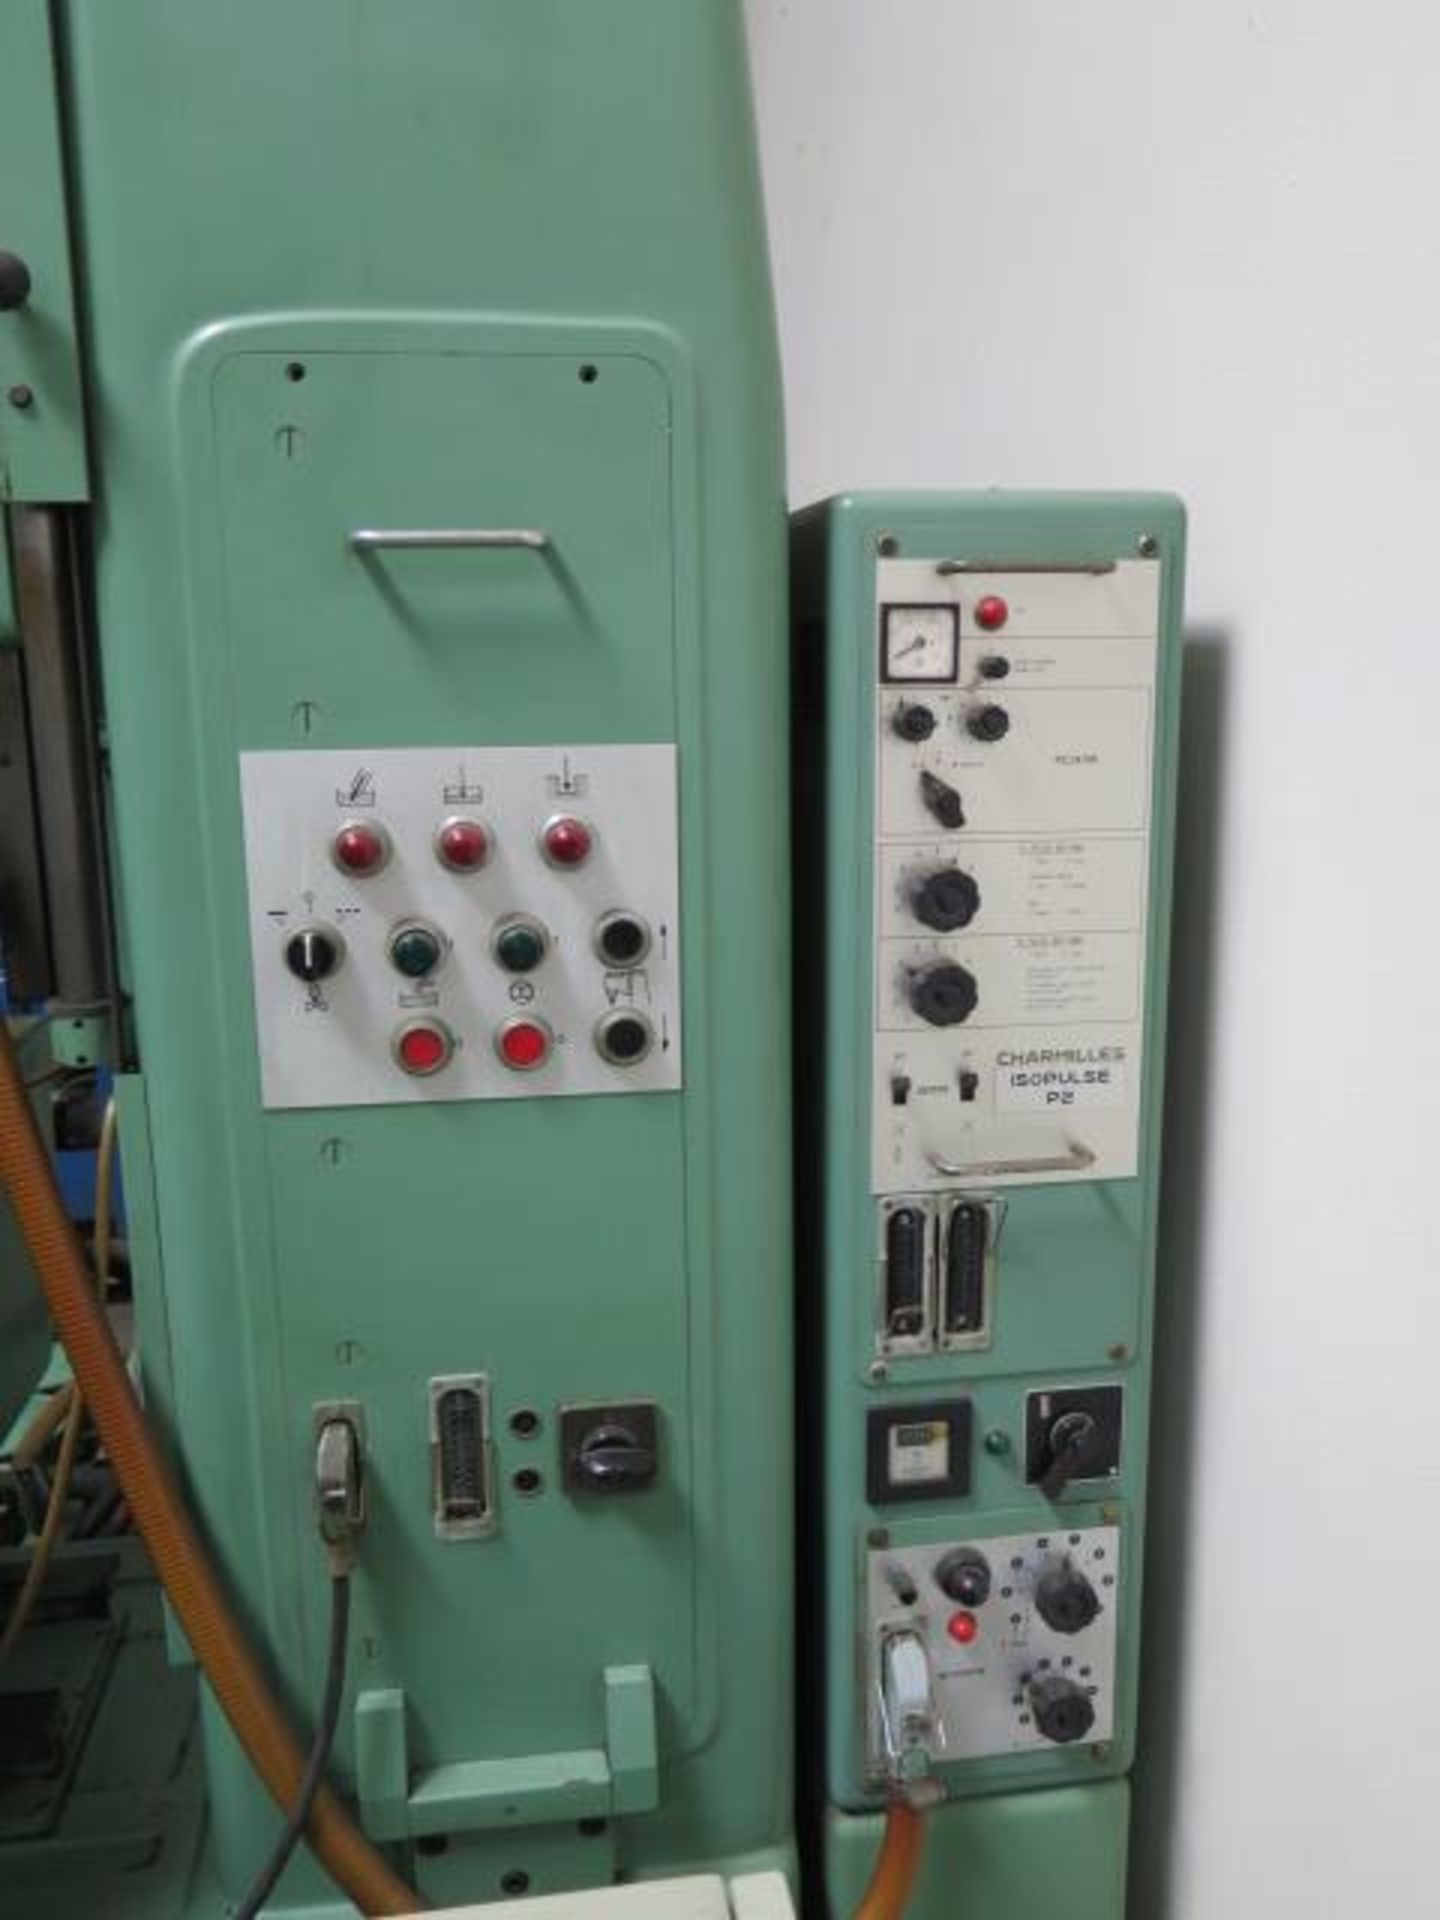 Charmilles Eleroda D1S Die Sinker EDM Machine s/n 11161 w/ Impulse P2 Power Source SOLD AS IS - Image 5 of 16